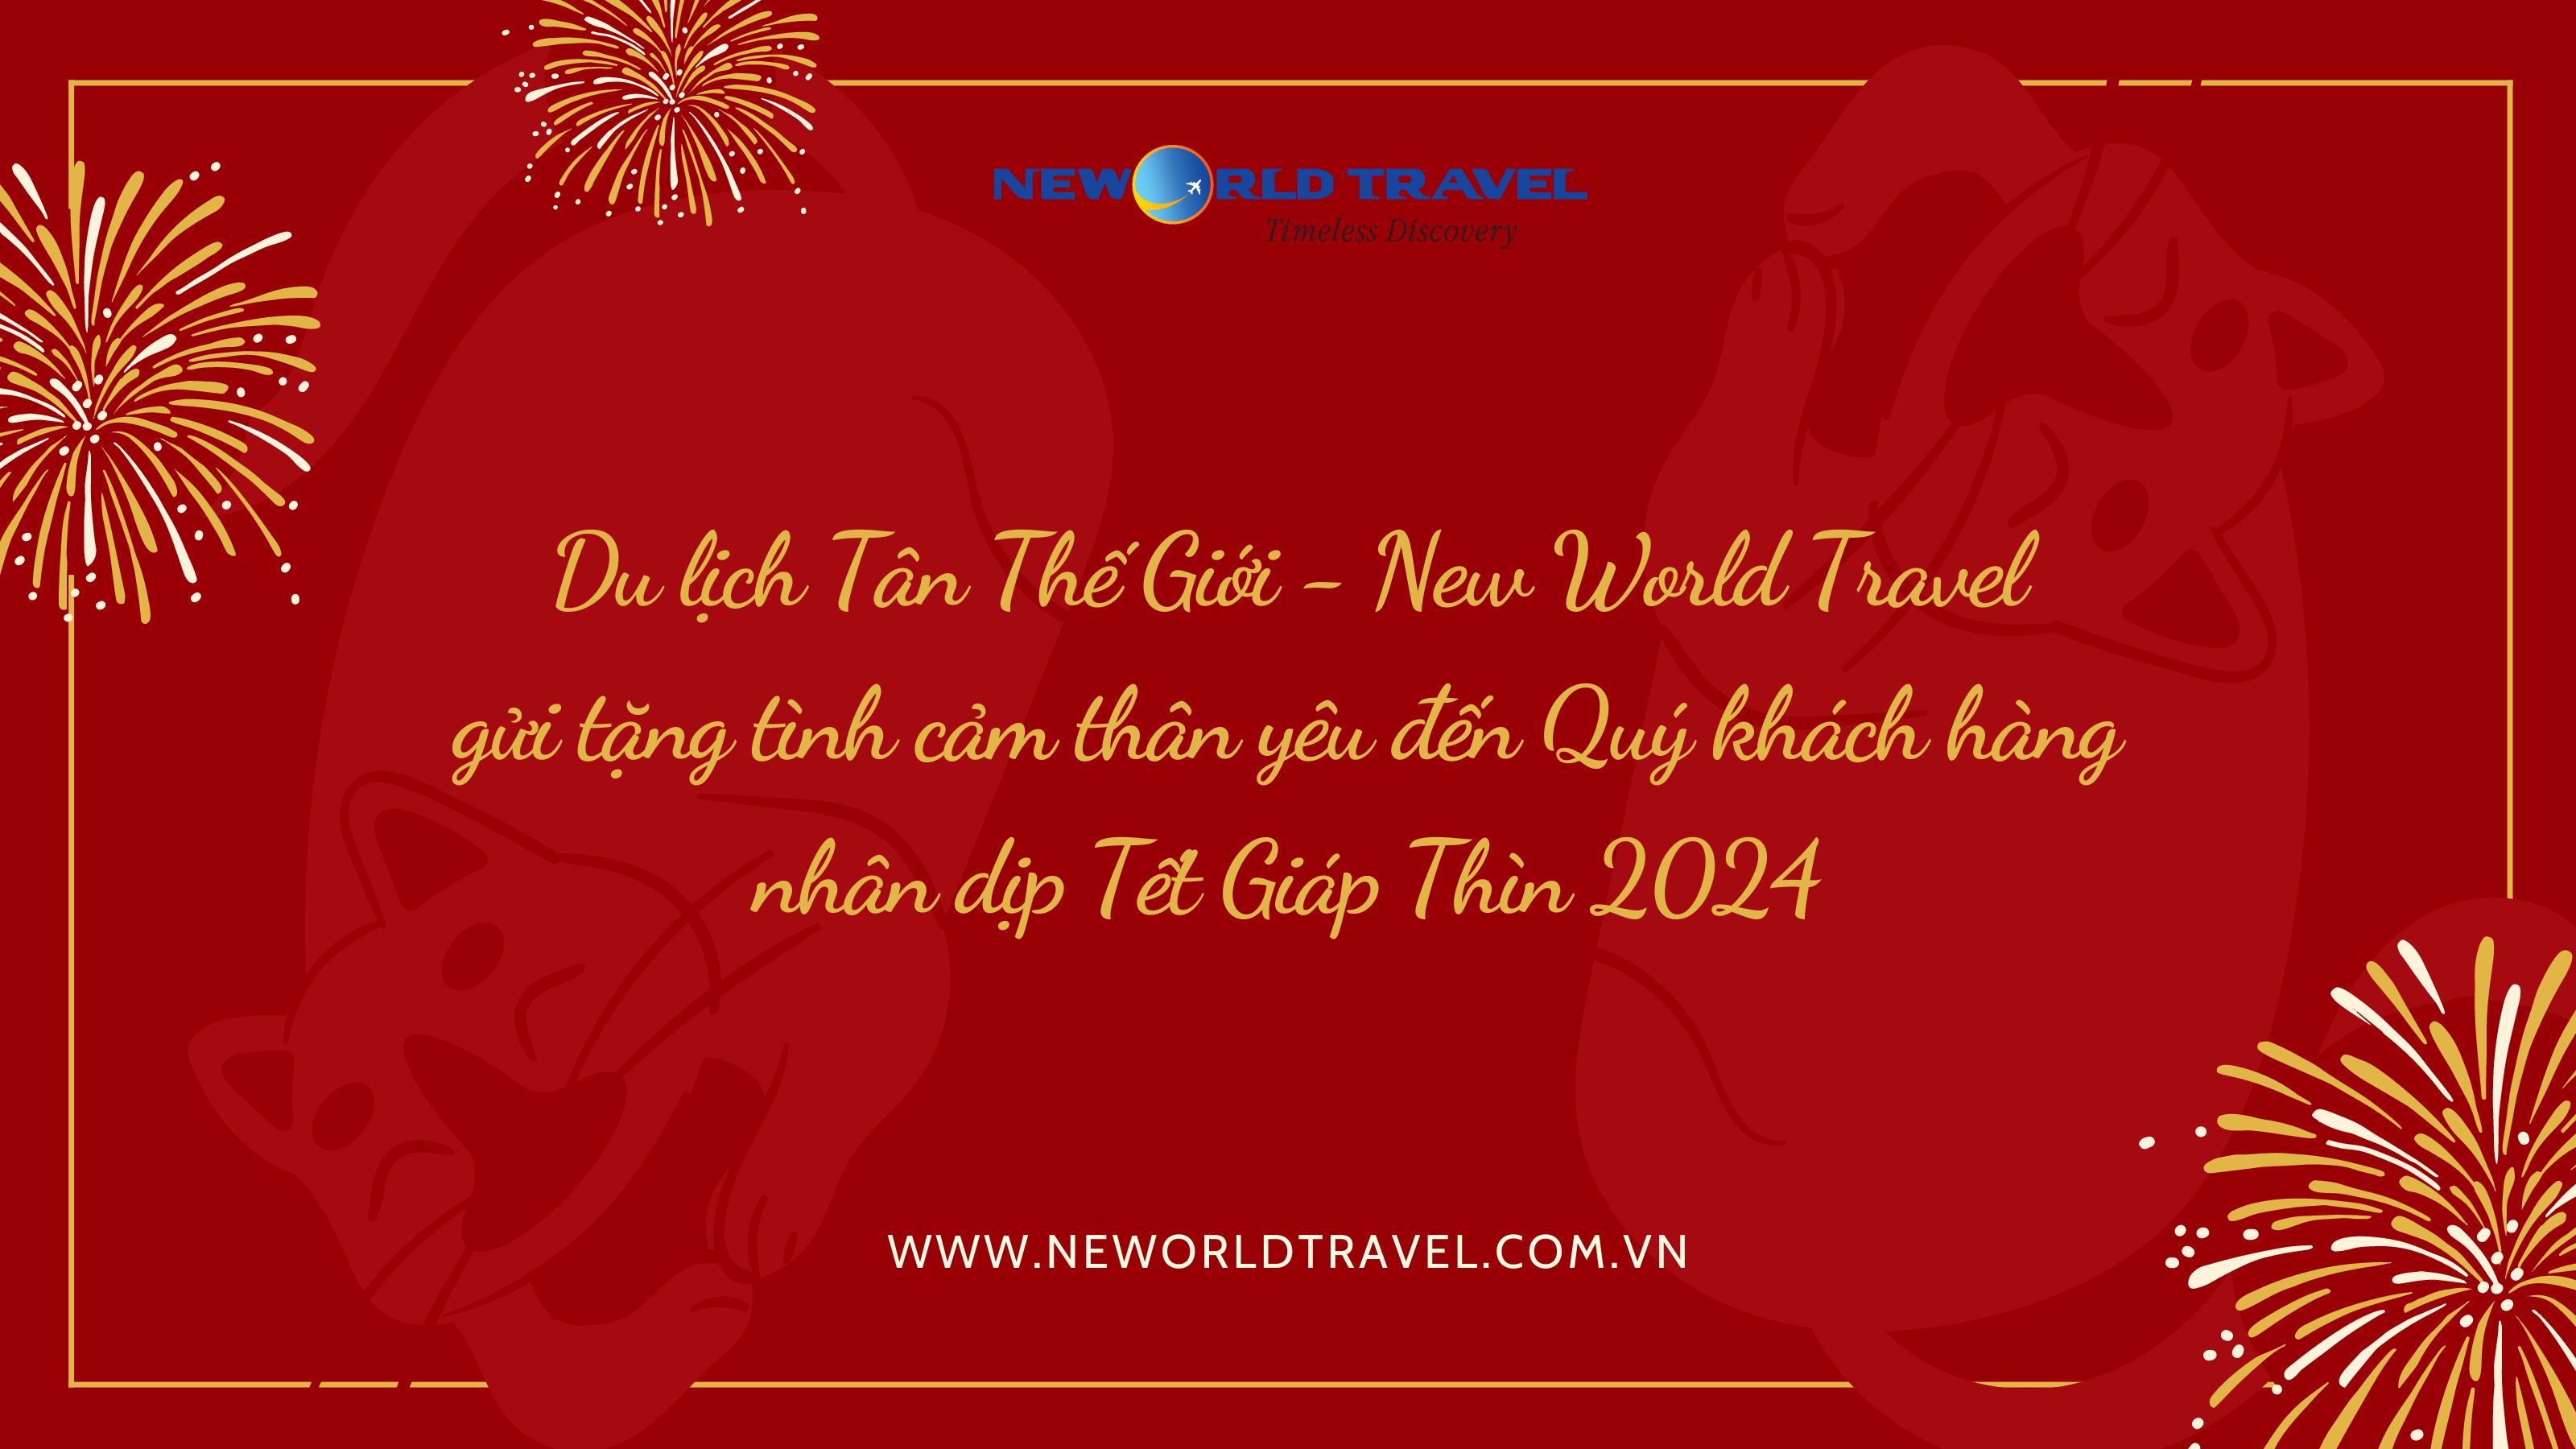 Du lịch Tân Thế Giới - New World Travel gửi tặng tình cảm thân yêu đến Quý khách hàng nhân dịp Tết Giáp Thìn 2024